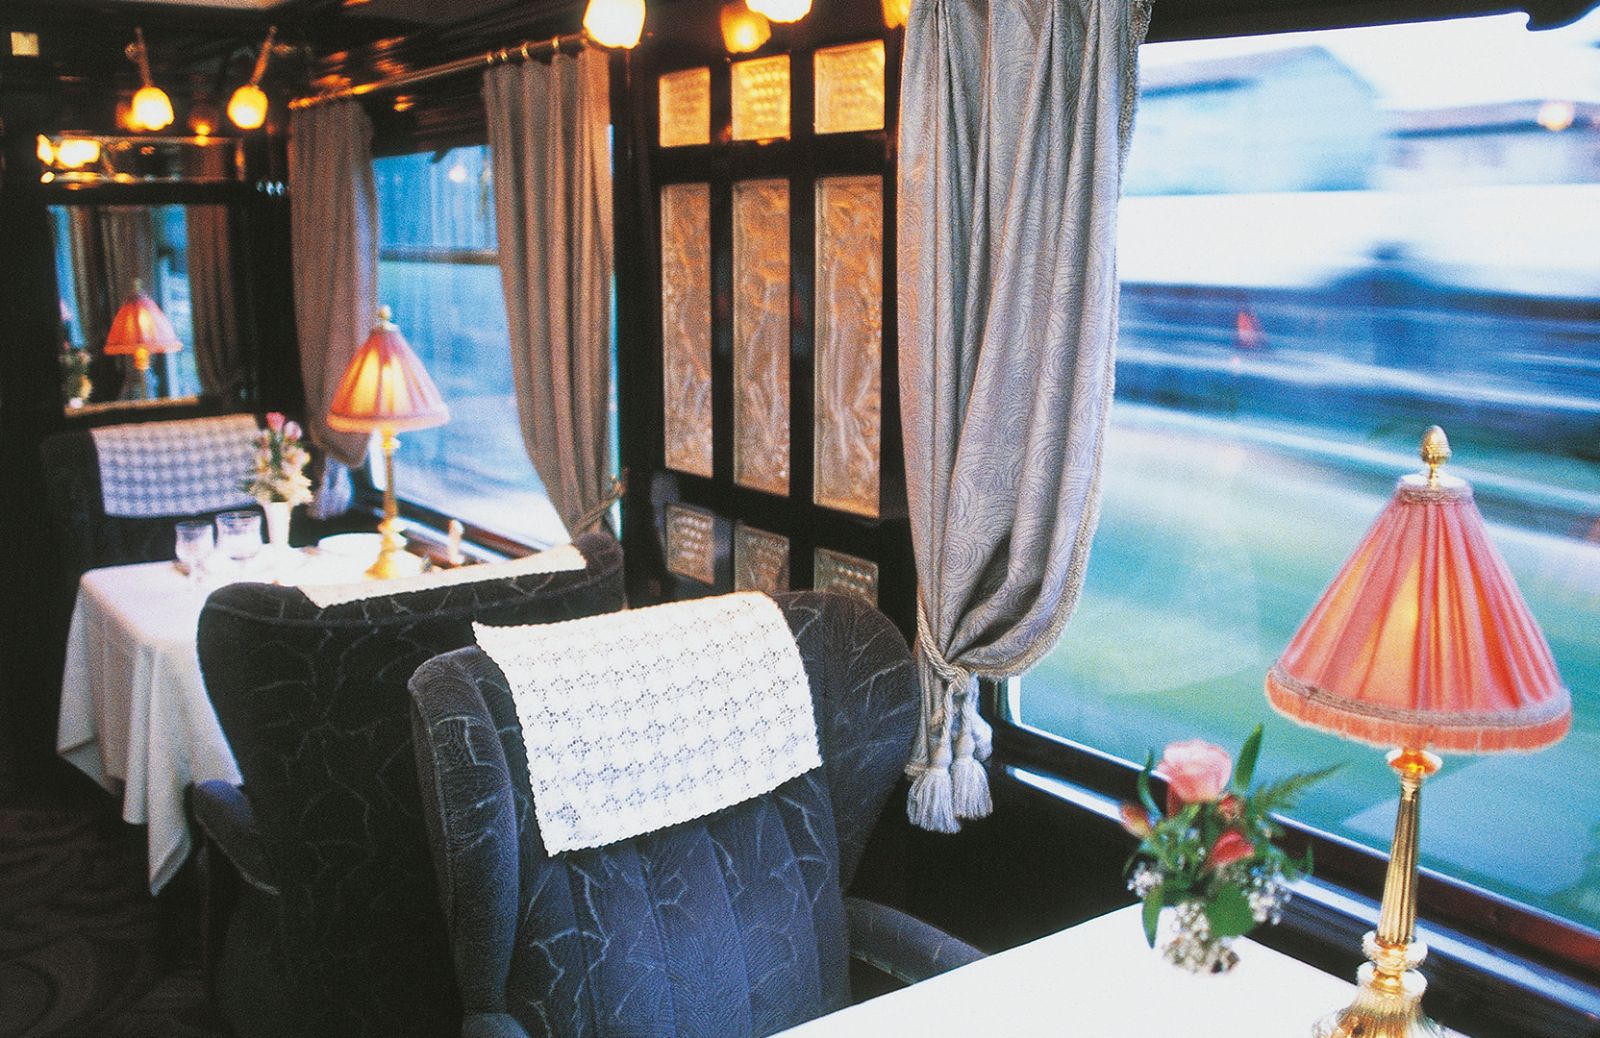 Il viaggio più chic è sull’Orient Express!